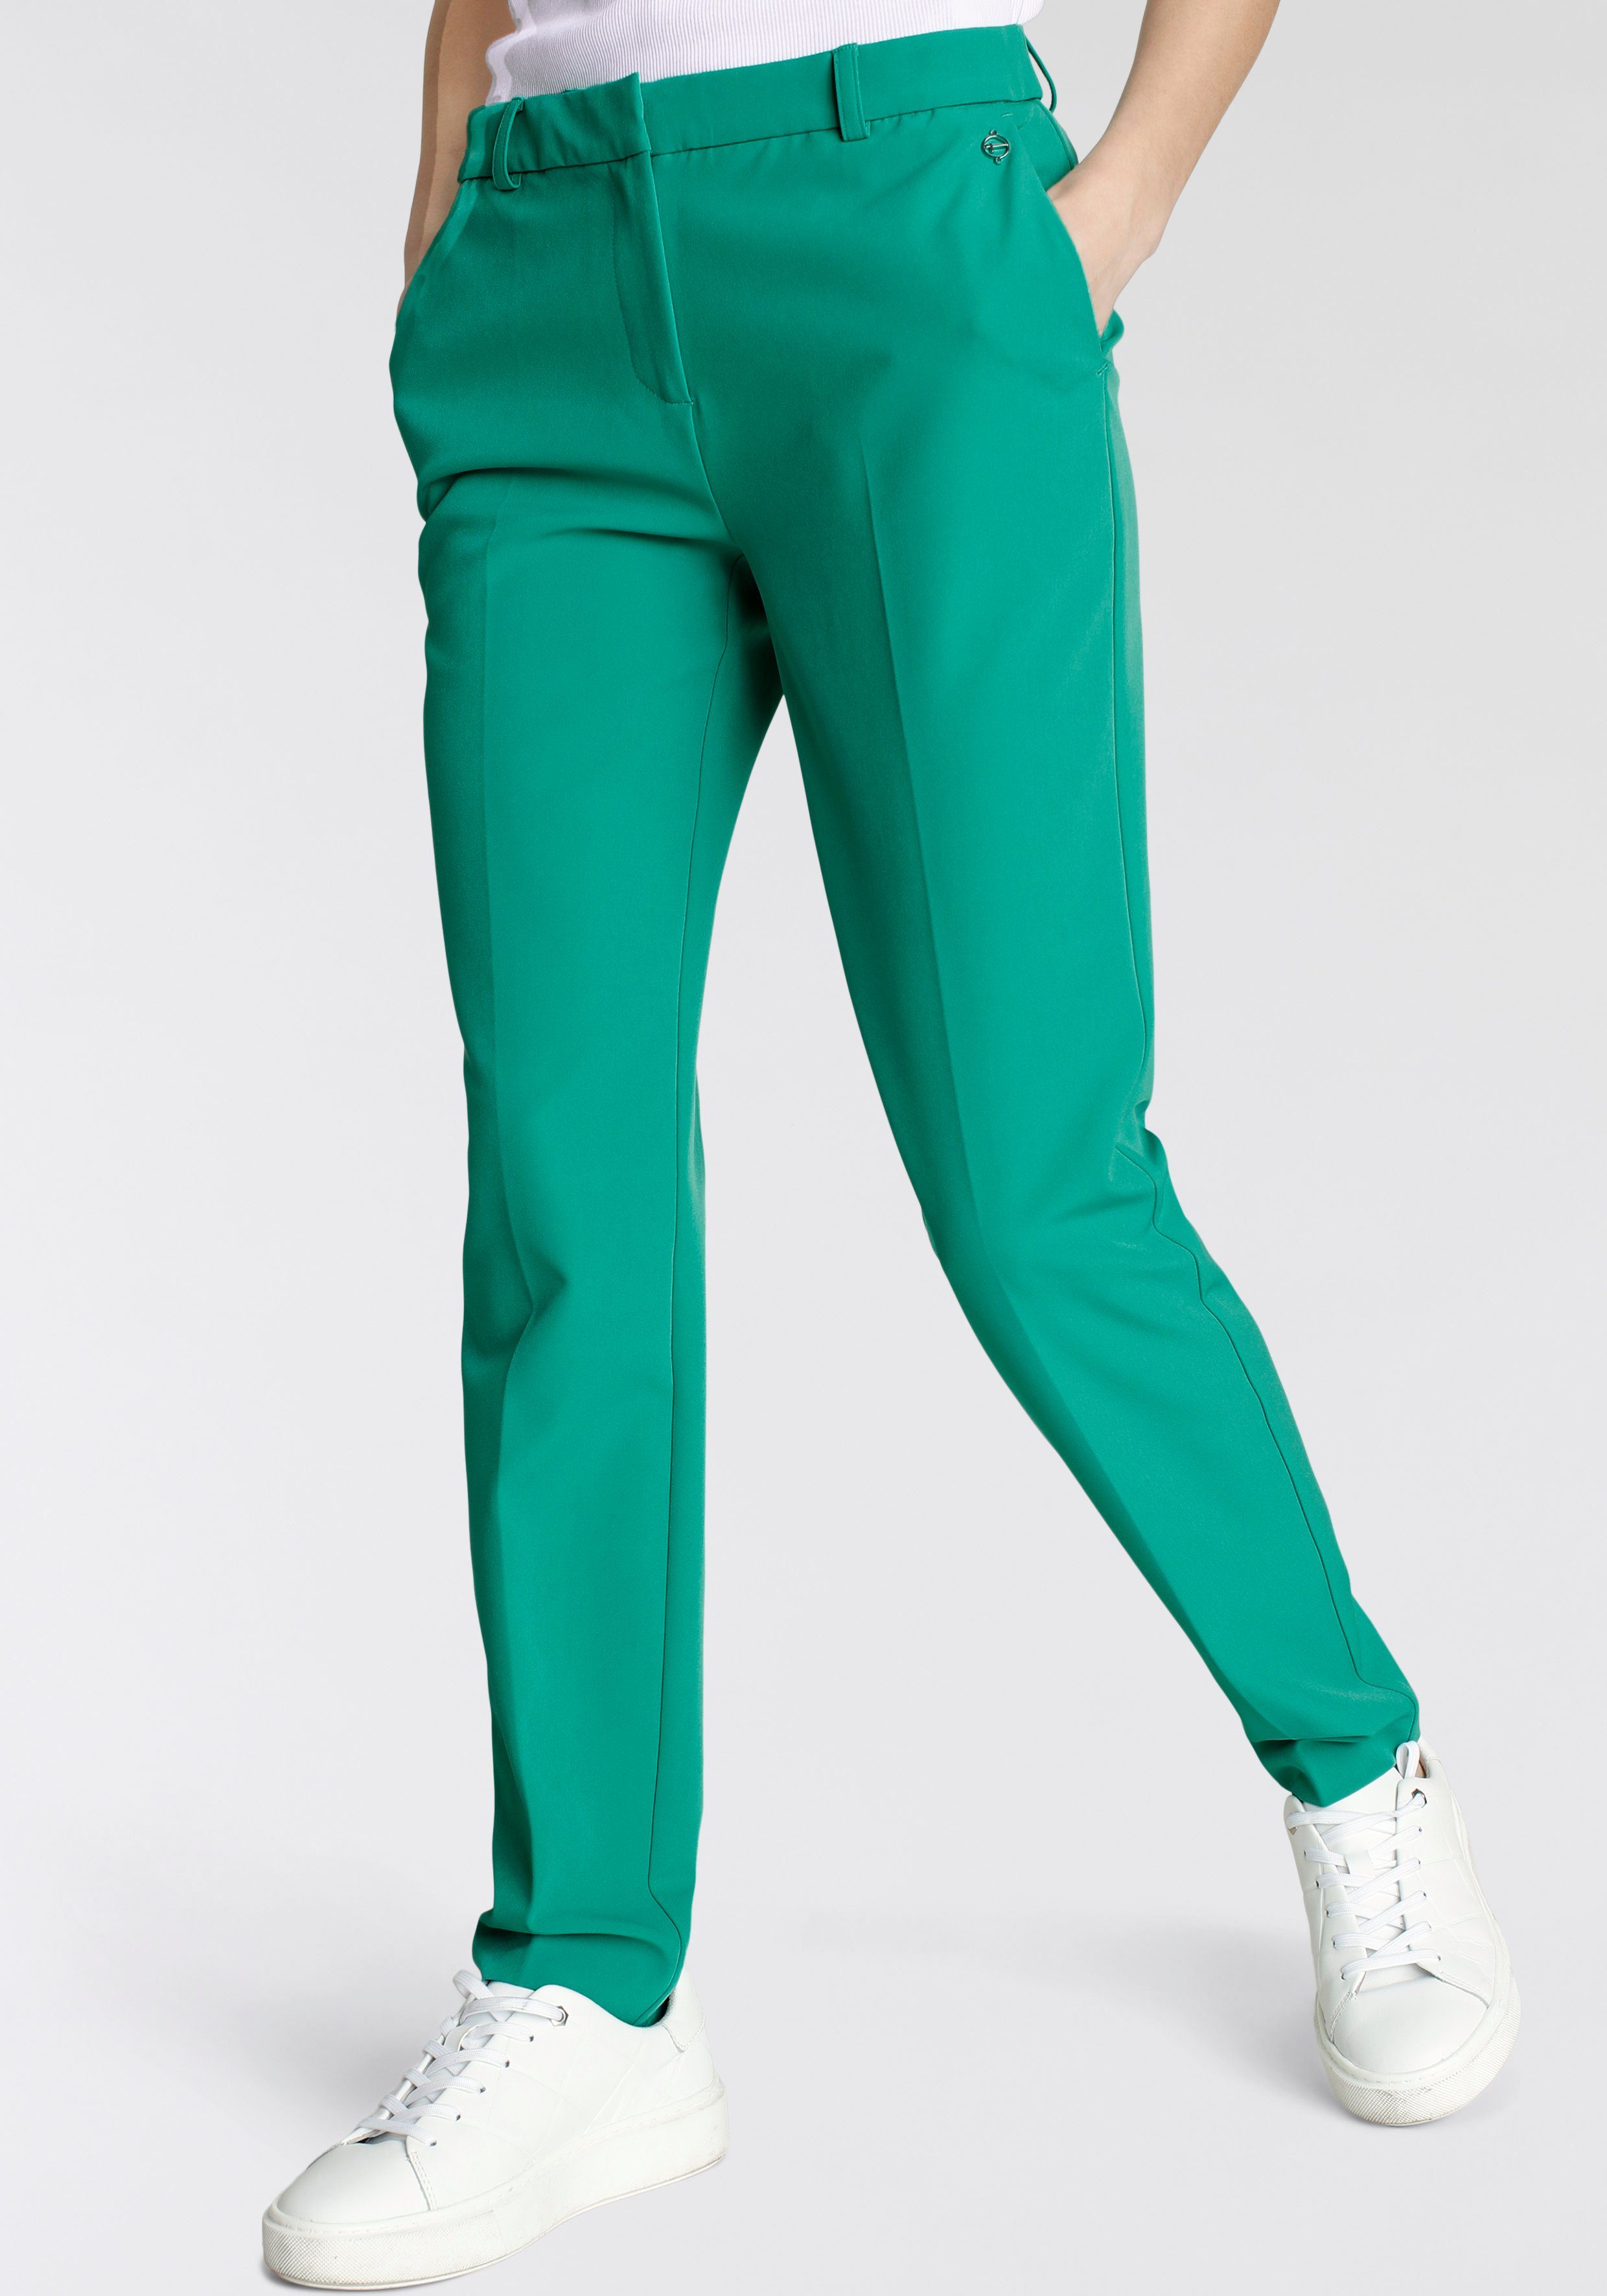 Tamaris Anzughose in Trendfarben grün (Hose aus nachhaltigem Material')